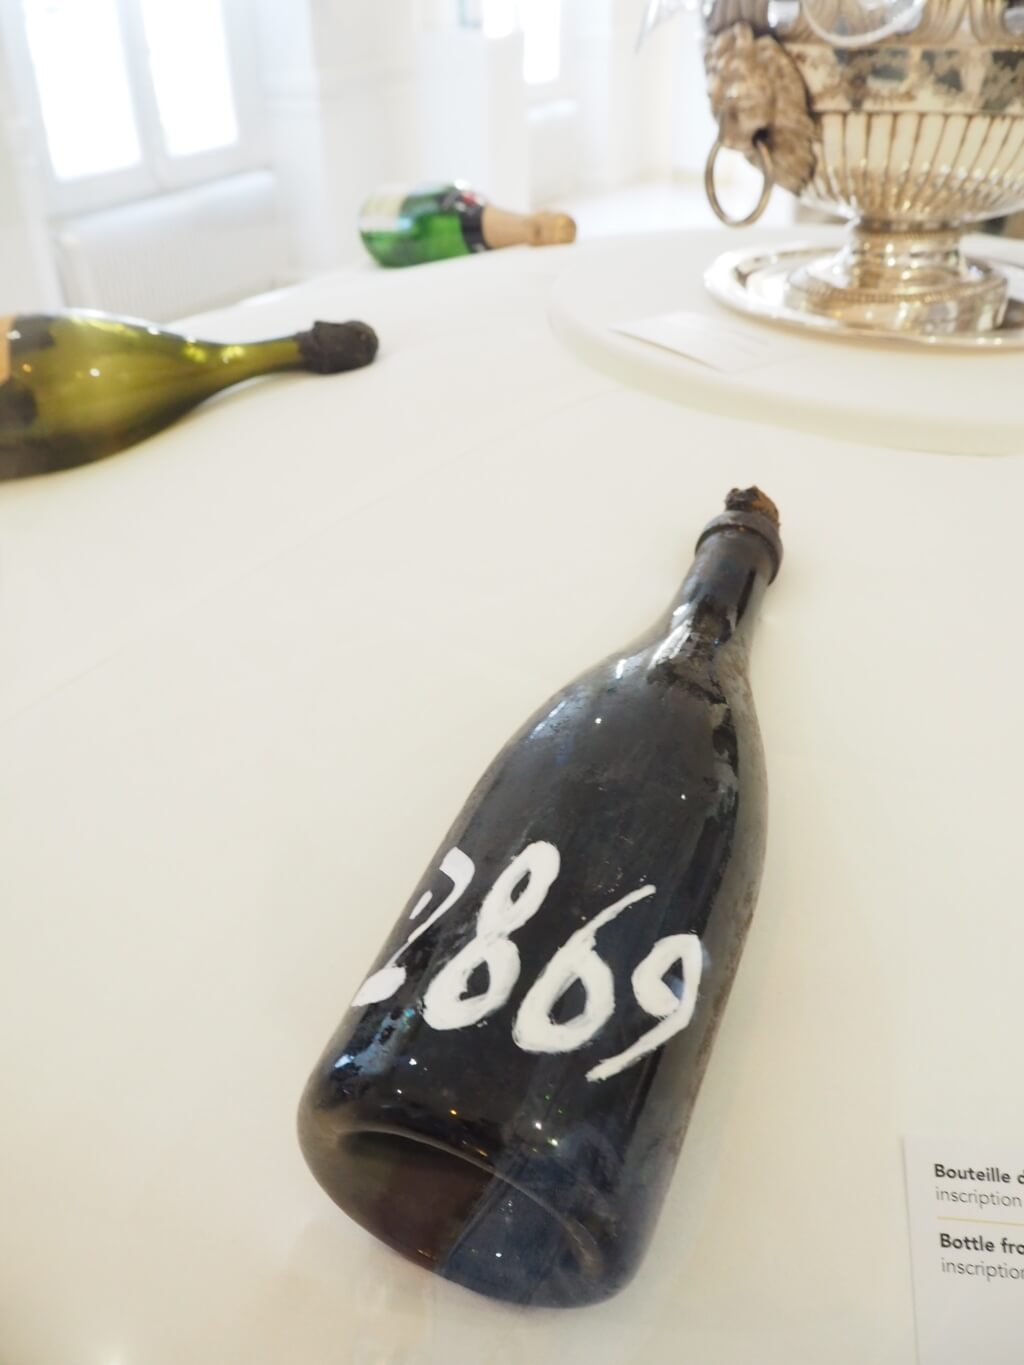 早年的香檳瓶以人手描寫出釀造年份， 充滿了工藝感。